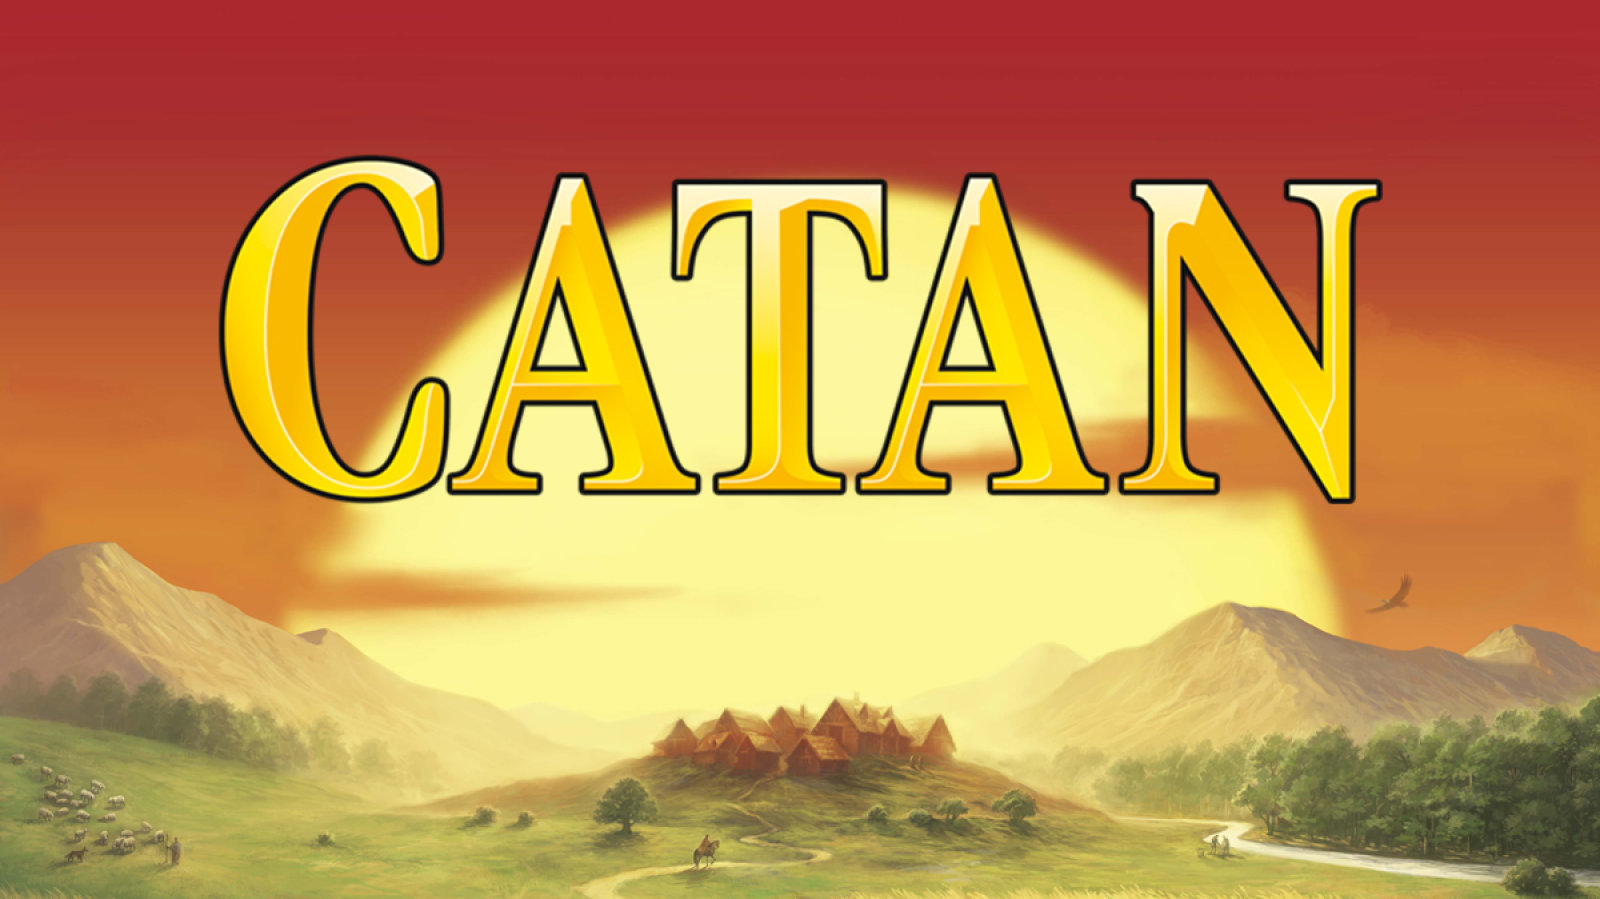 Logo van Catan